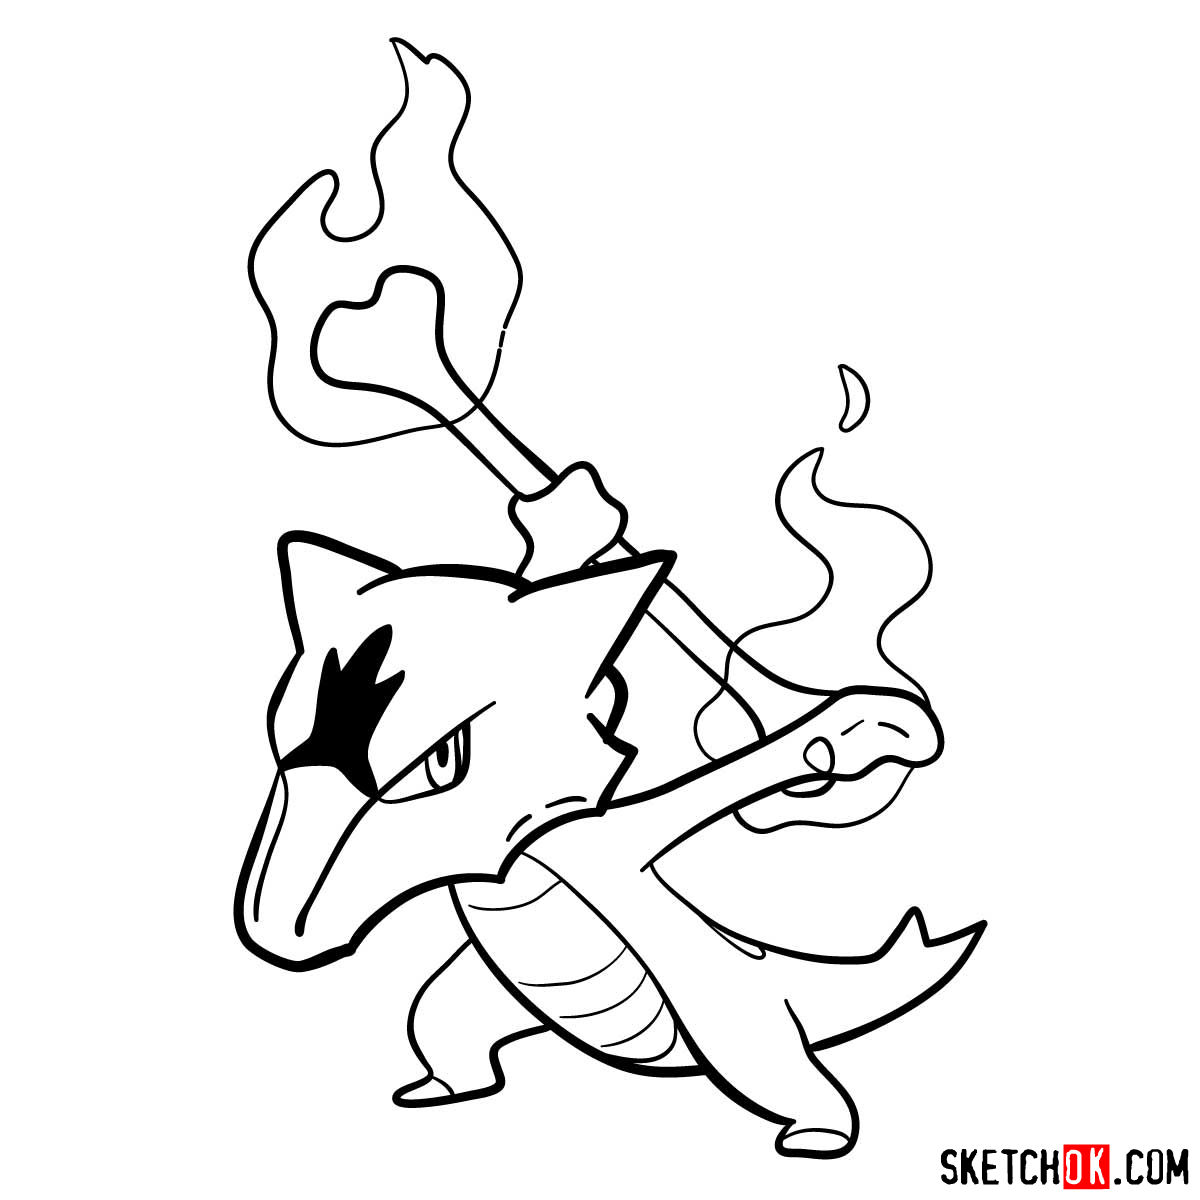 How to draw Marowak pokemon - step 12